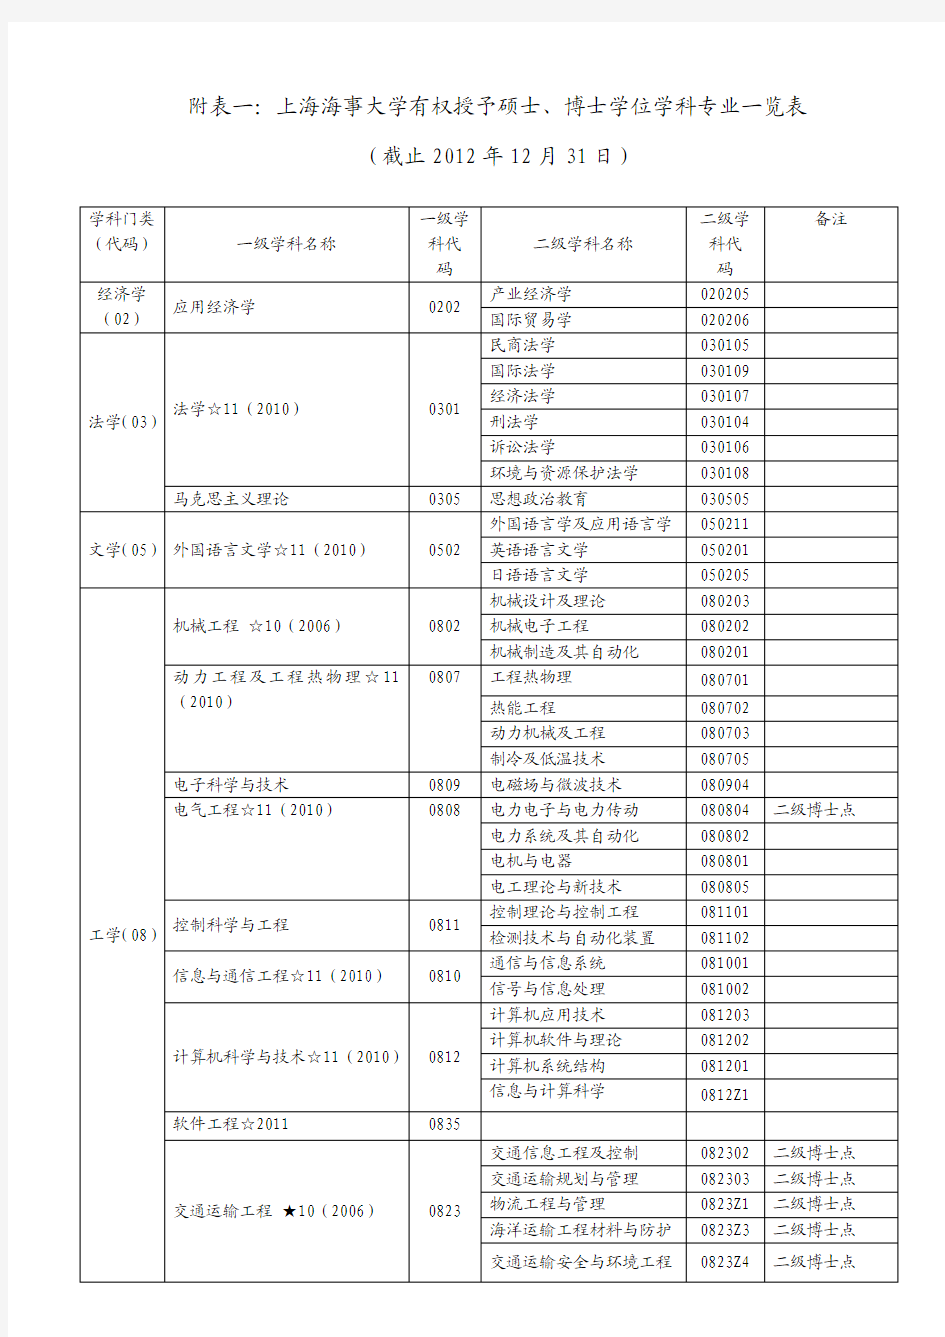 上海海事大学学科专业一览表